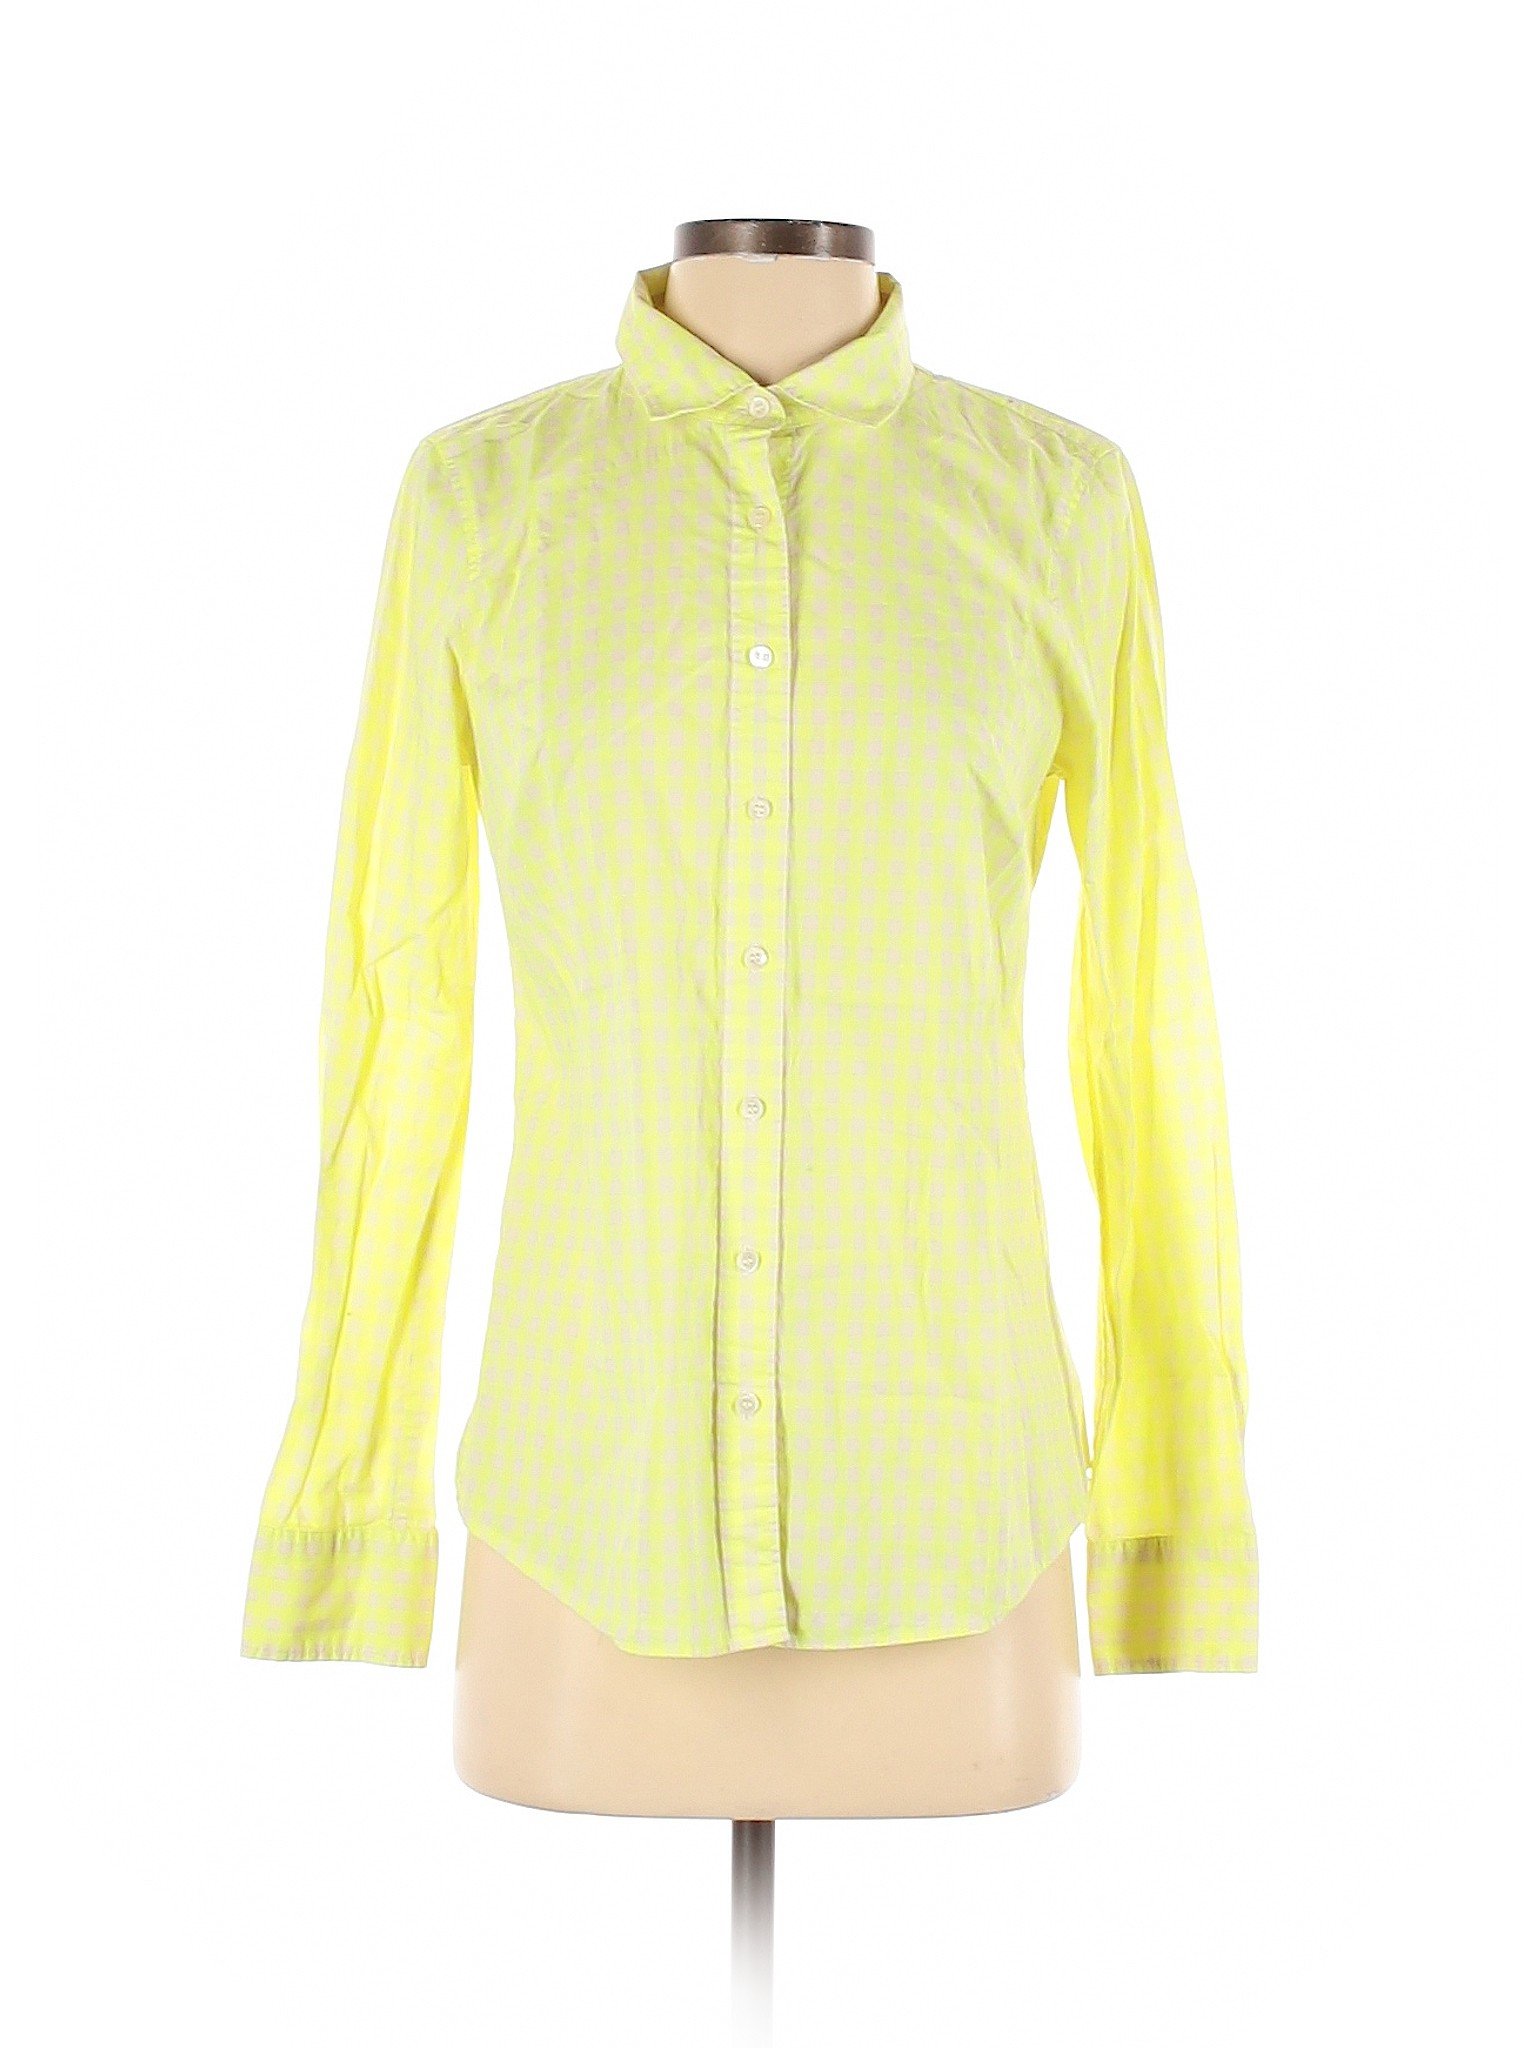 J.Crew Women Yellow Long Sleeve Button-Down Shirt 4 | eBay